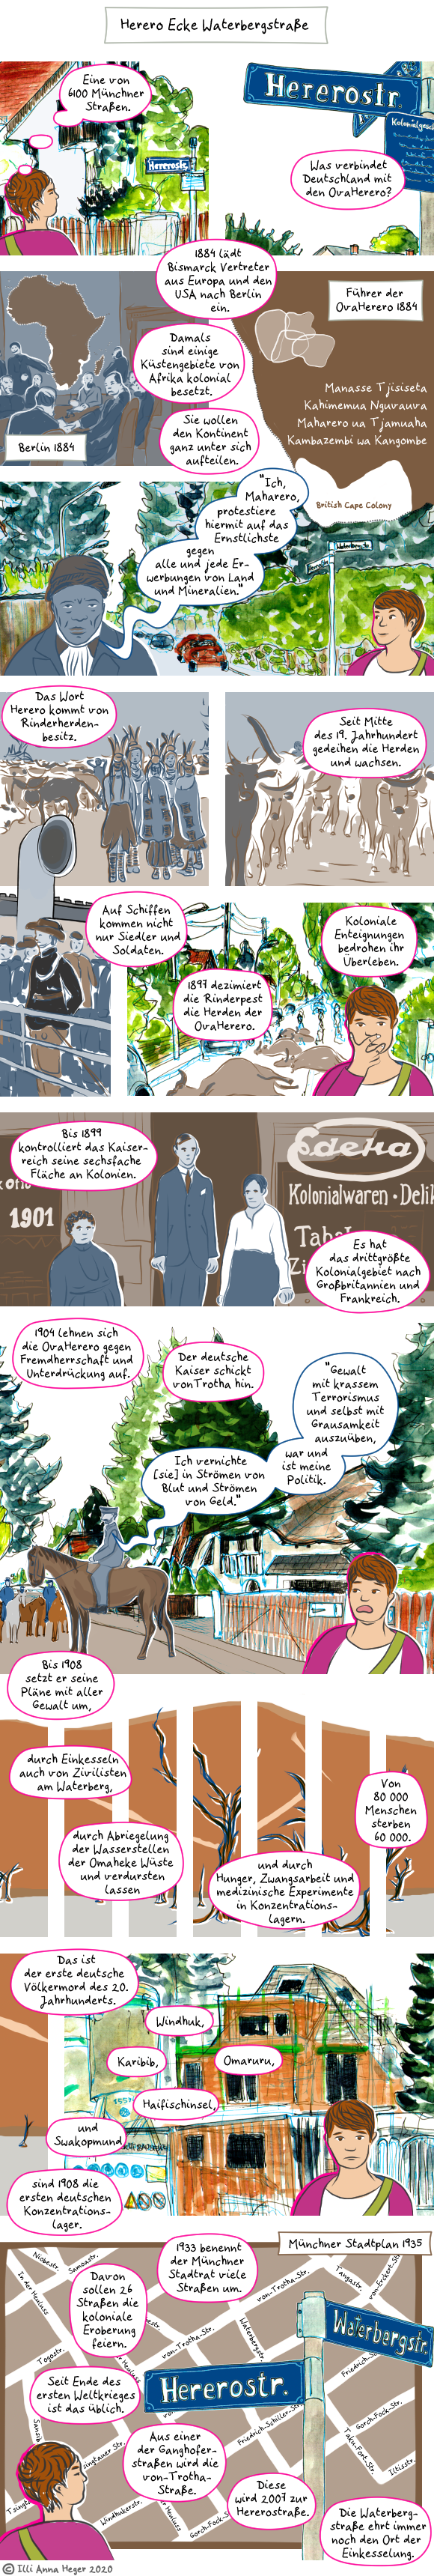 Visuelles journalistisches Comic namens Herero Ecke Waterbergstraße. Die Transkription des Comics in reinen Text folgt am Ende der Webseite.